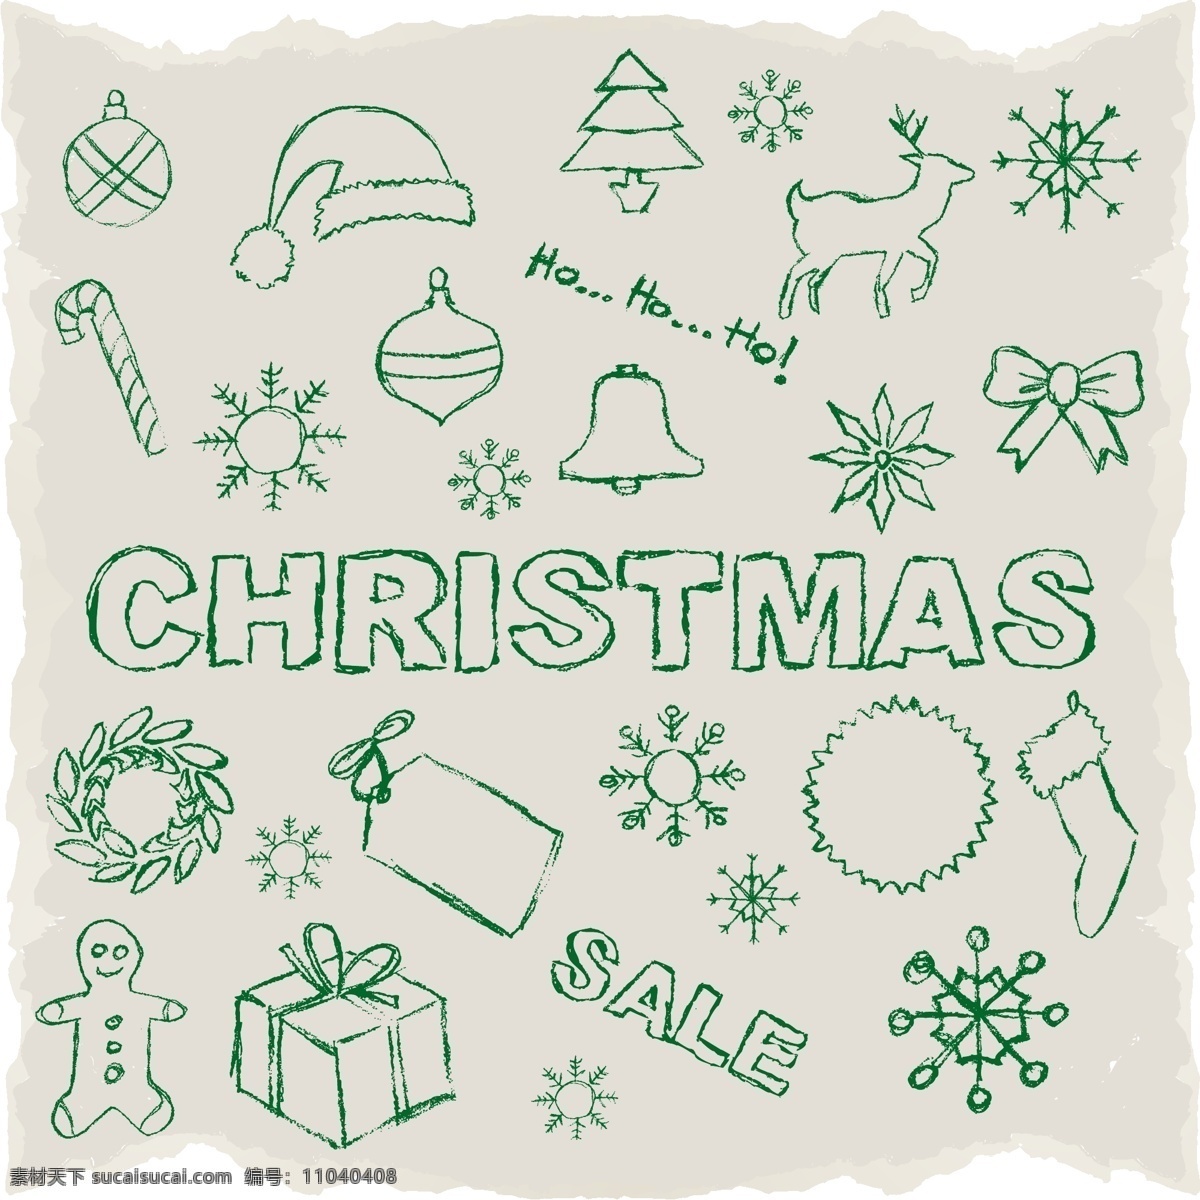 绿色 圣诞 插画 矢量 圣诞节 圣诞树 圣诞帽 手绘 雪花 铃铛 圣诞袜 蝴蝶结 麋鹿 拐棍糖 姜饼人 礼包 矢量图 白色